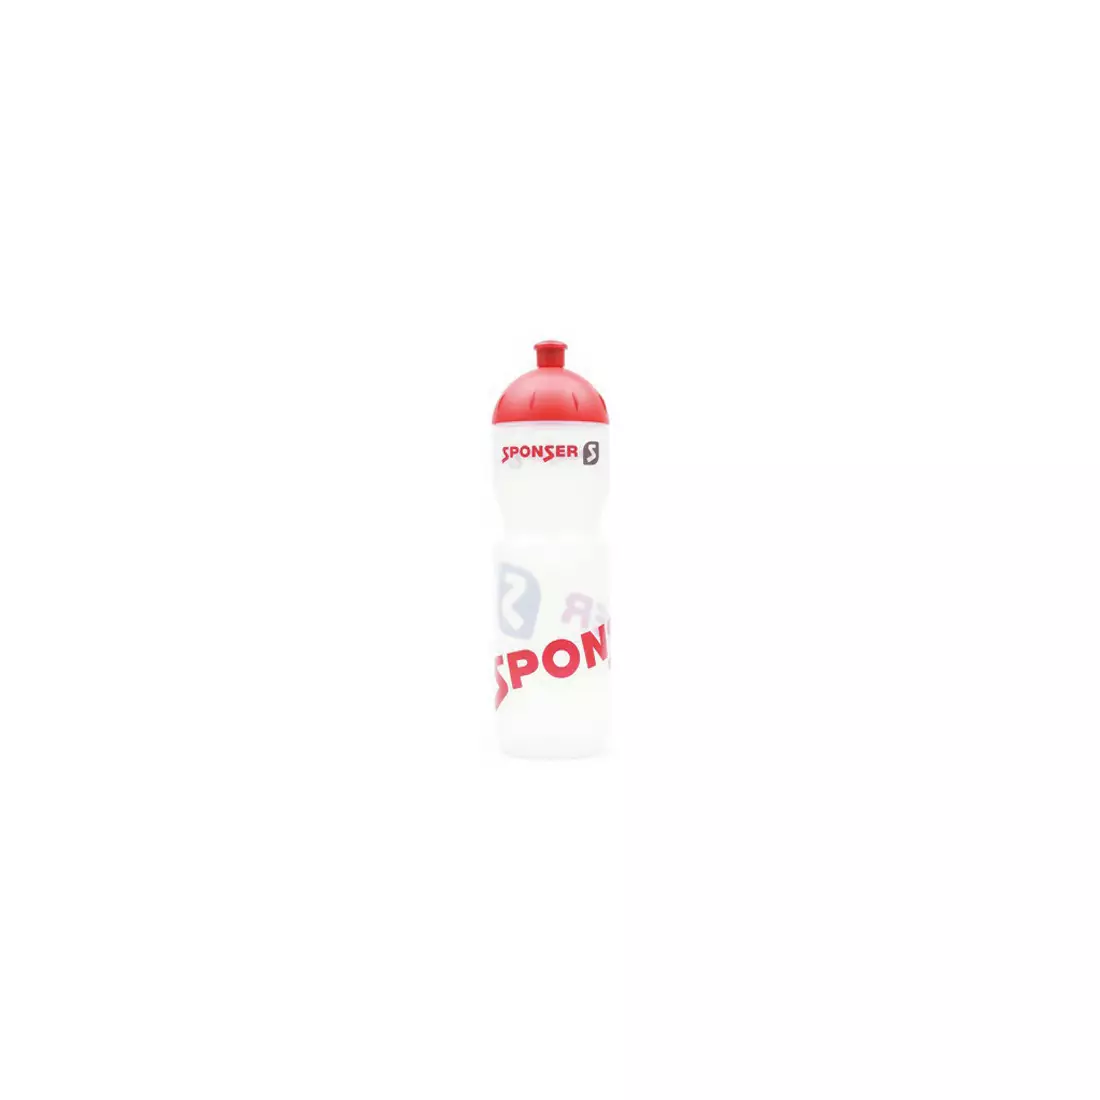 SPONSER Fahrrad Wasserflasche FARBIG 750 ml transparent pink